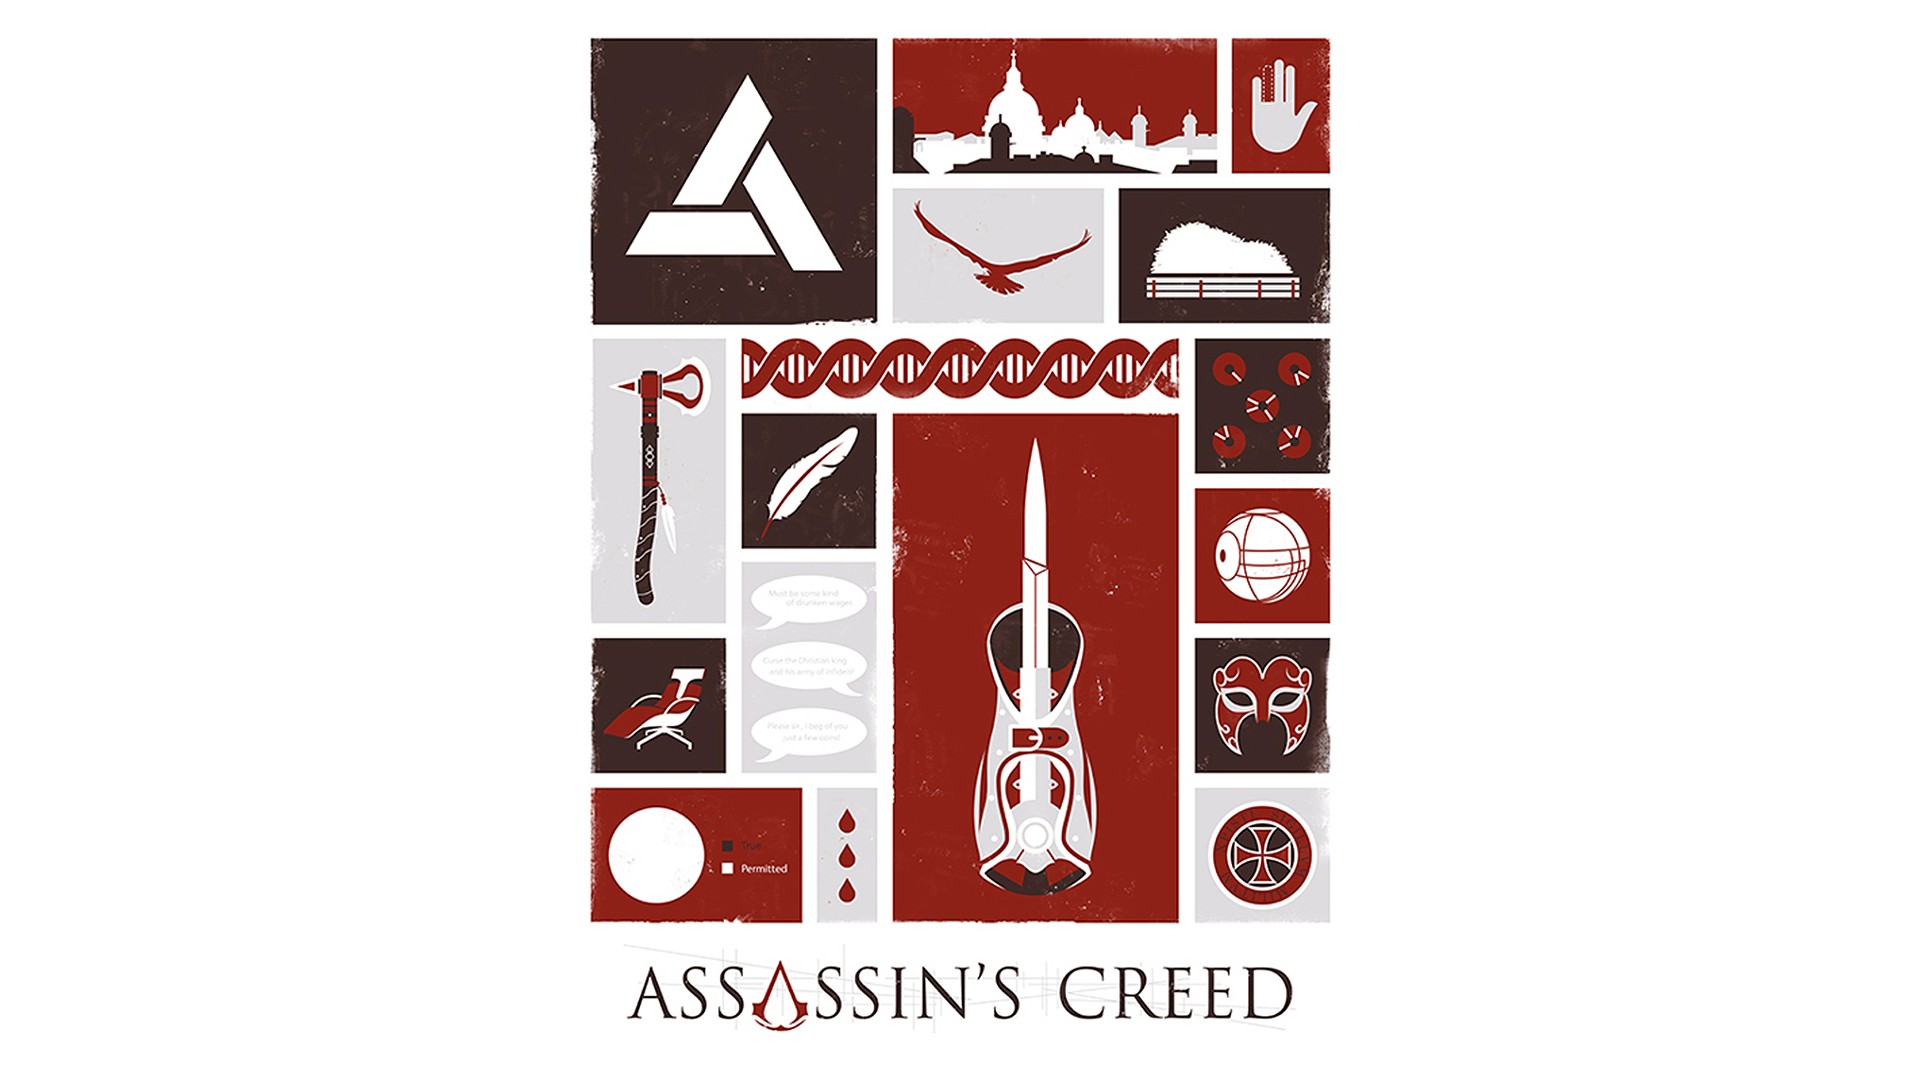 Video Games Assassins Creed Ubisoft Animus Fan Art Desmond